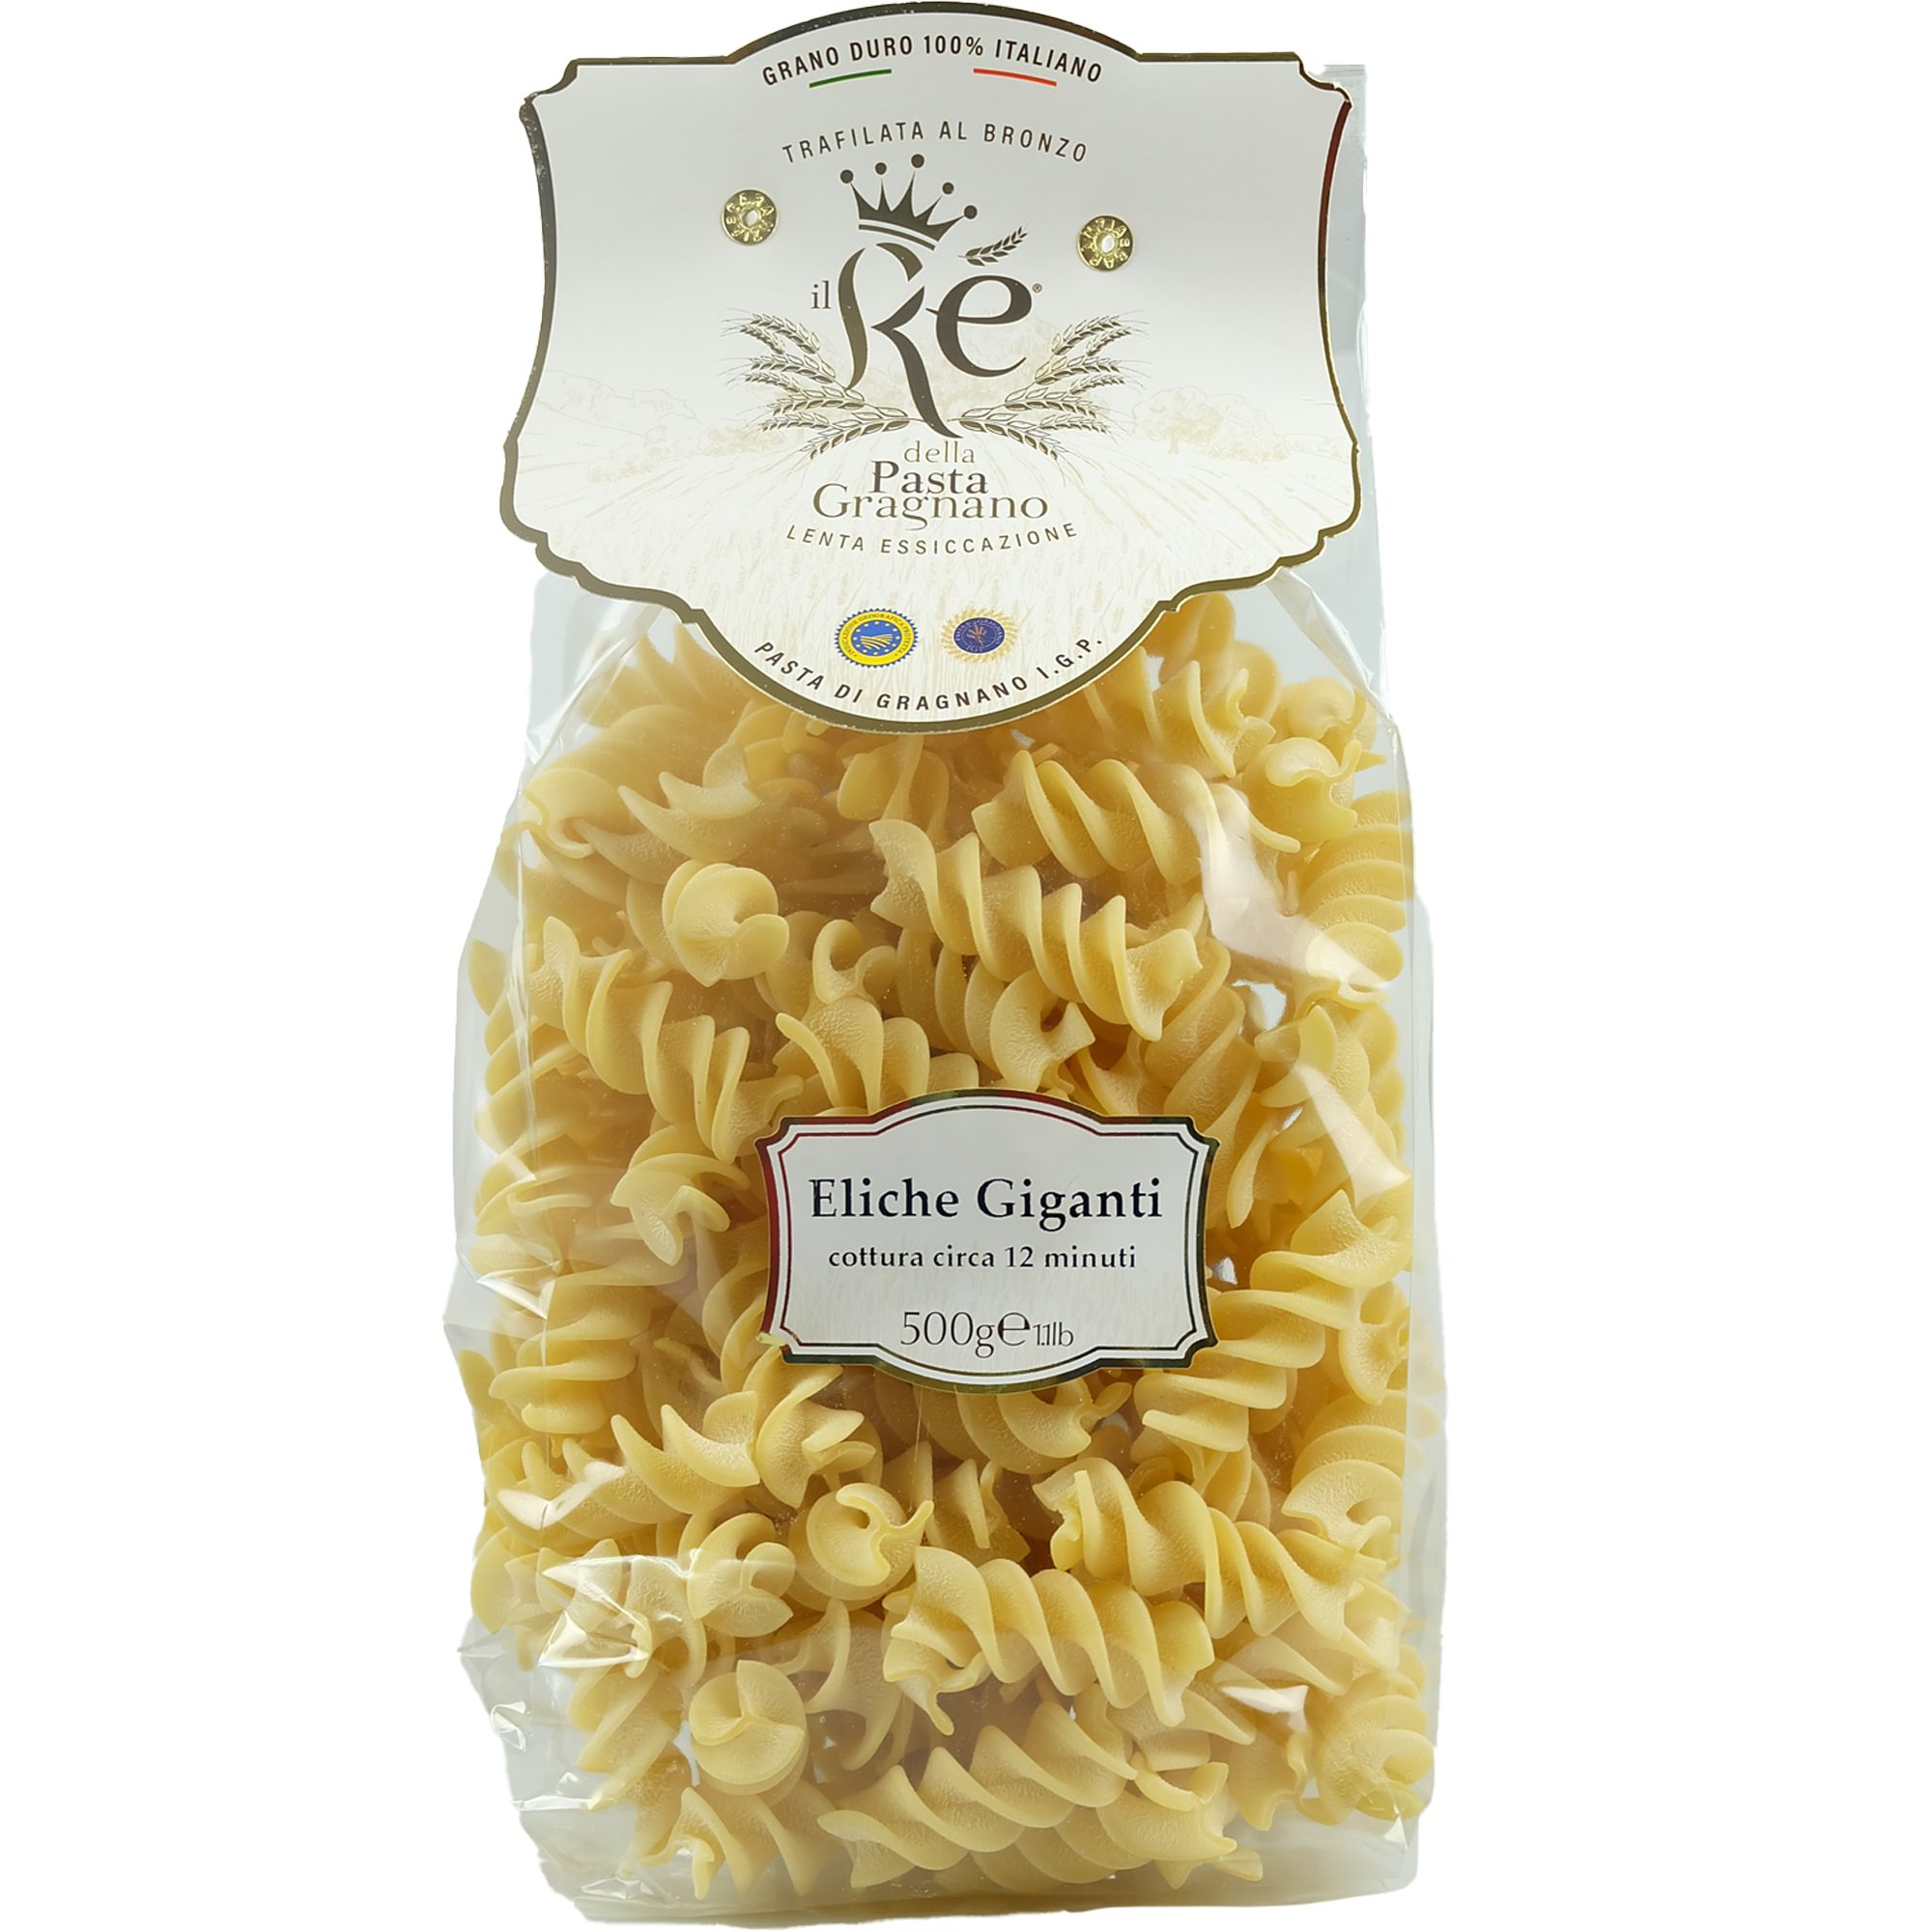 IL RE DELLA PASTA - ELICHE GIGANTI - GRAGNANO IGP - Jet Italian Deli - JID-DR-IM - Il Re della Pasta - Italian food - Italian grocery - Food delivery - Thailand - Wine - Truffle - Pasta - Cheese